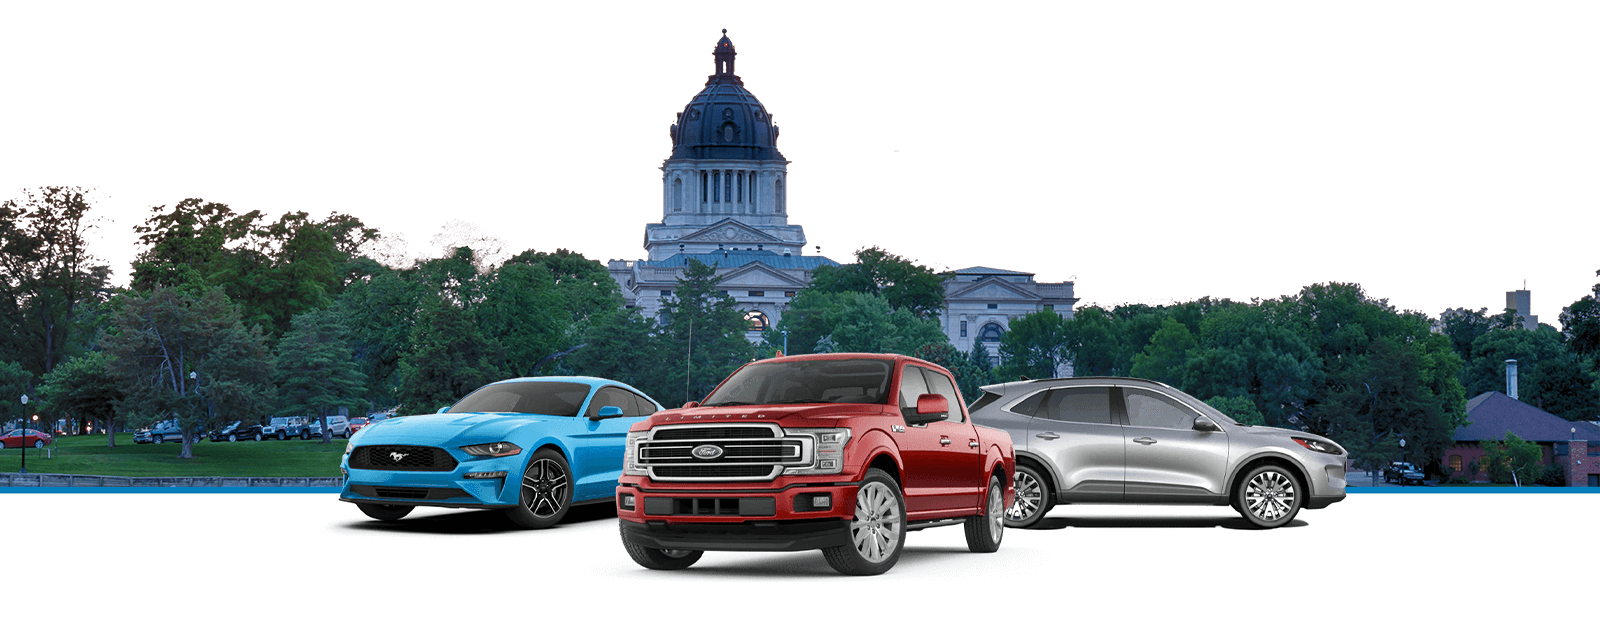 Đại lý Ford tại thủ đô sẽ cung cấp cho bạn những sản phẩm chất lượng cao. Bạn sẽ có cơ hội trải nghiệm những dòng xe đa dụng, bền bỉ và đầy tính năng tiện ích cho cả gia đình và công việc.